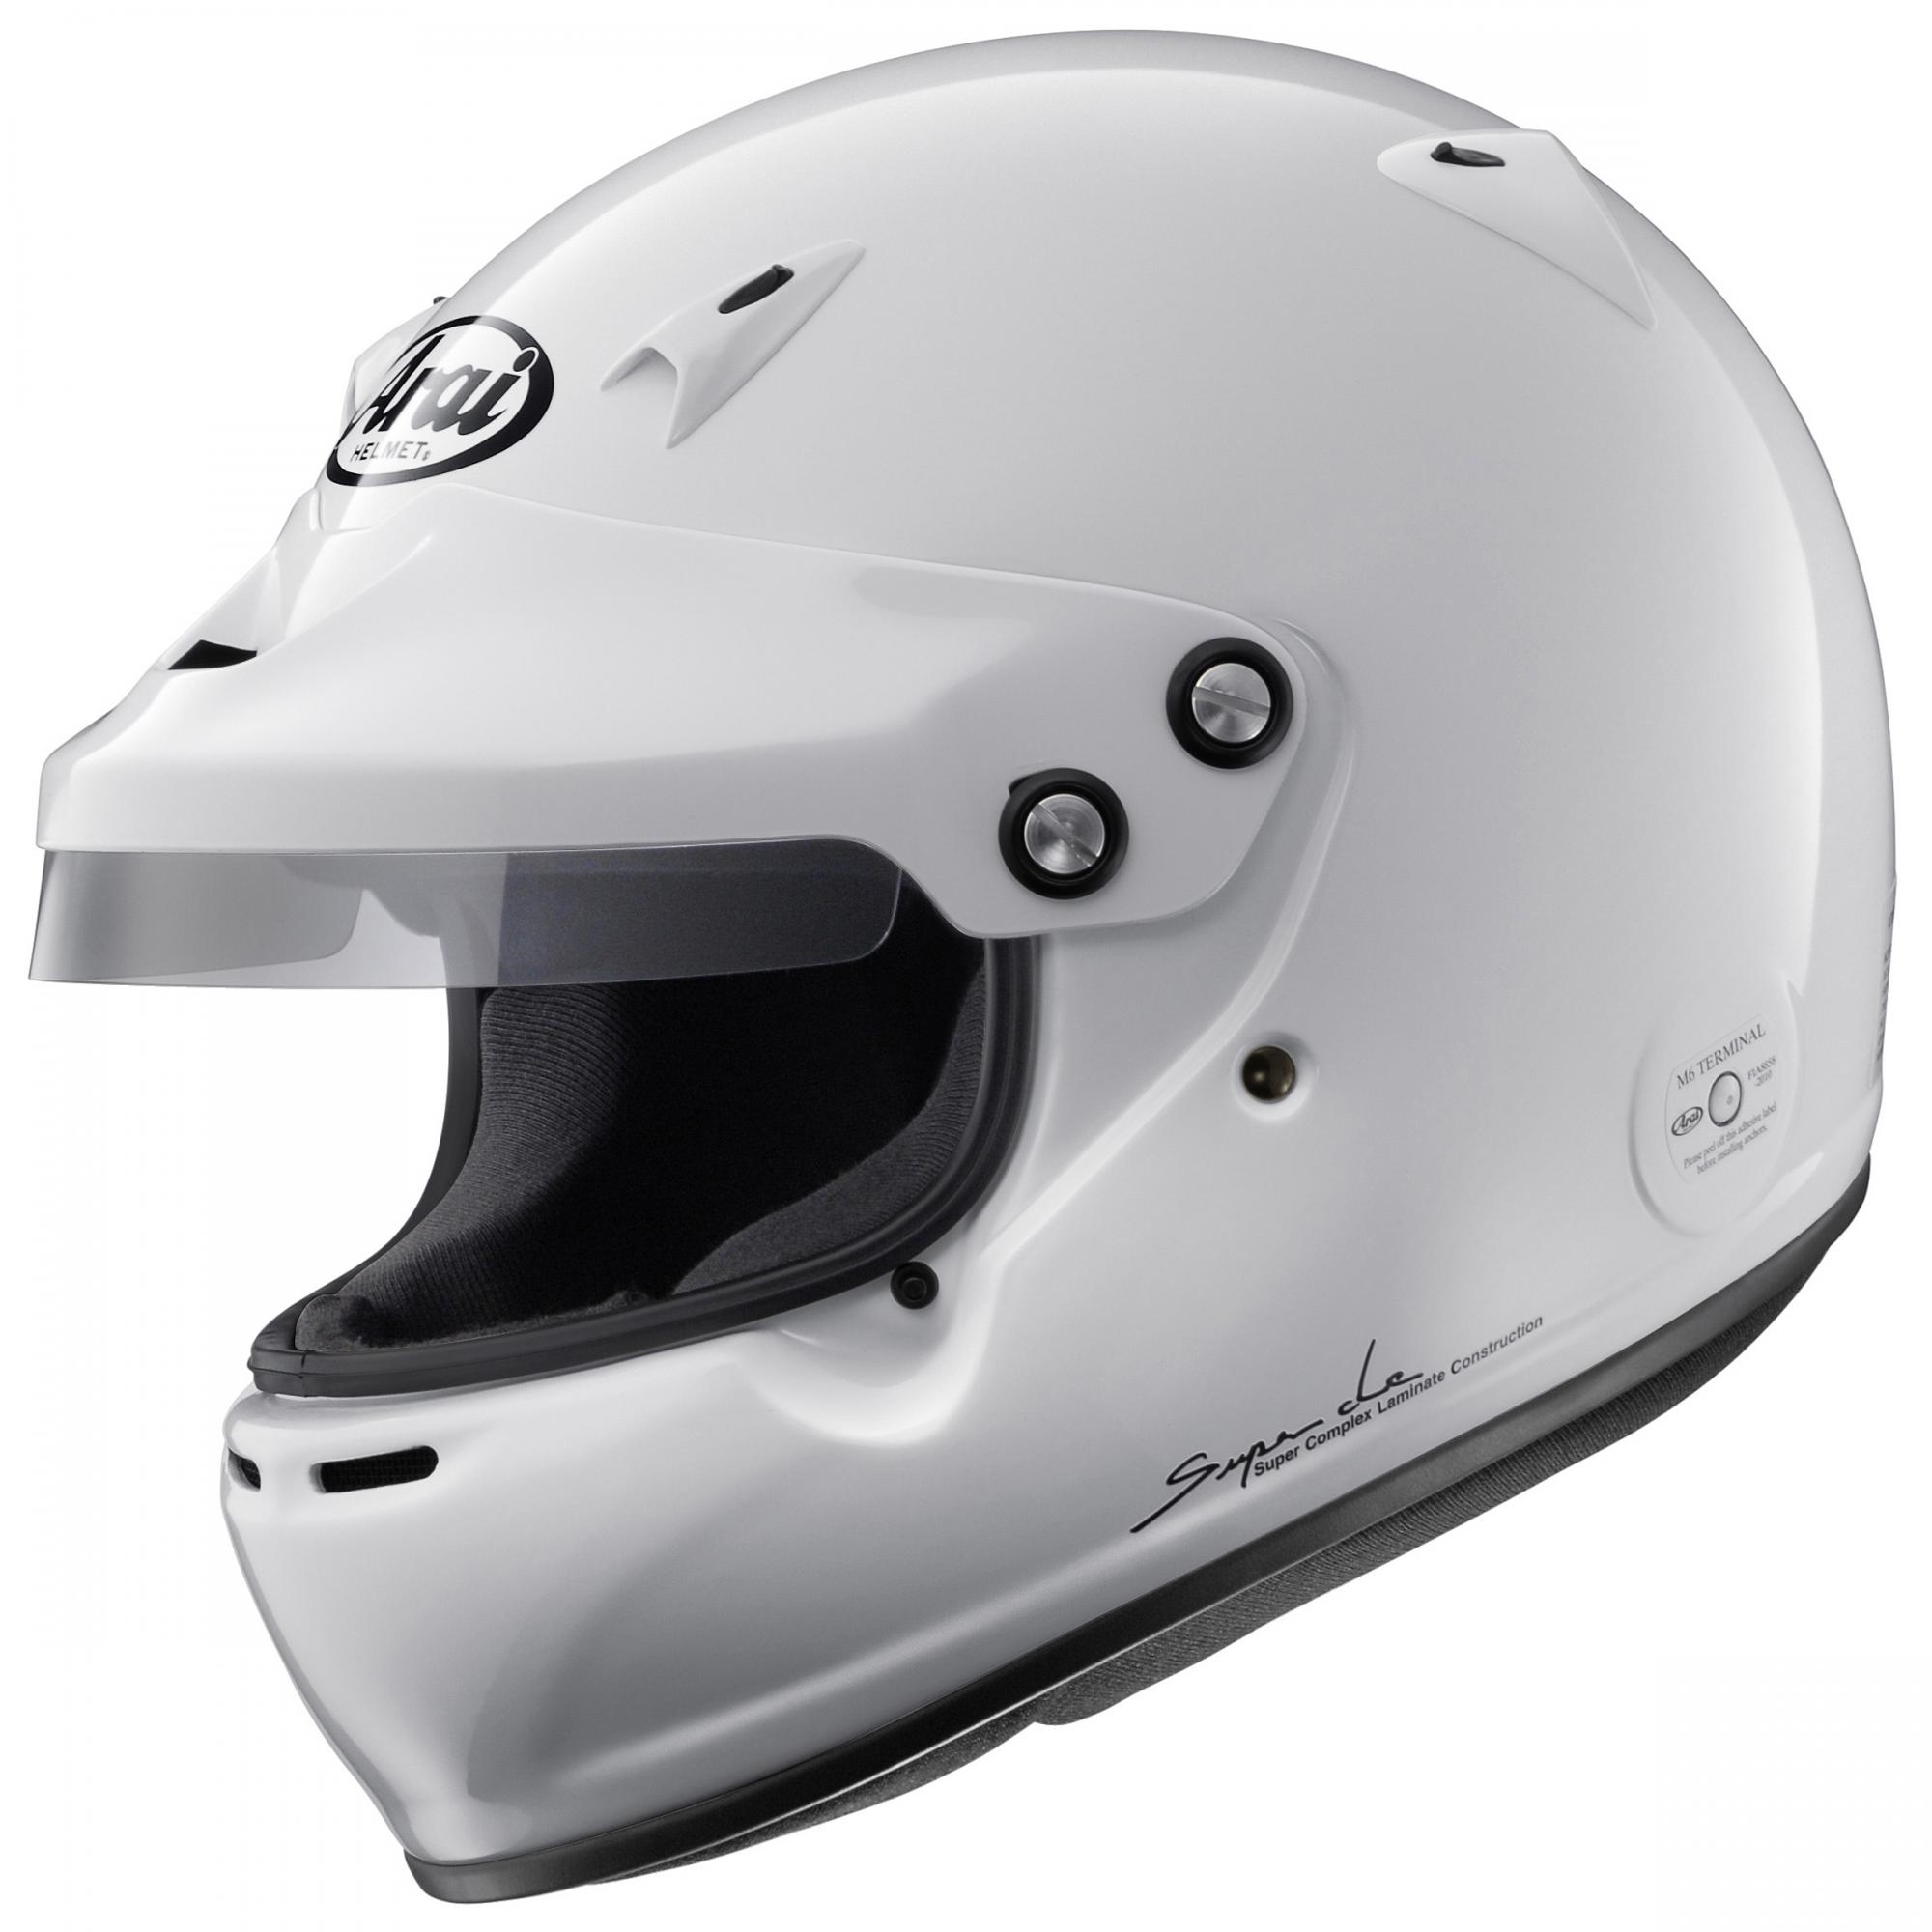 Arai GP5W Helmet FIA 88592015 Approved from Merlin Motorsport